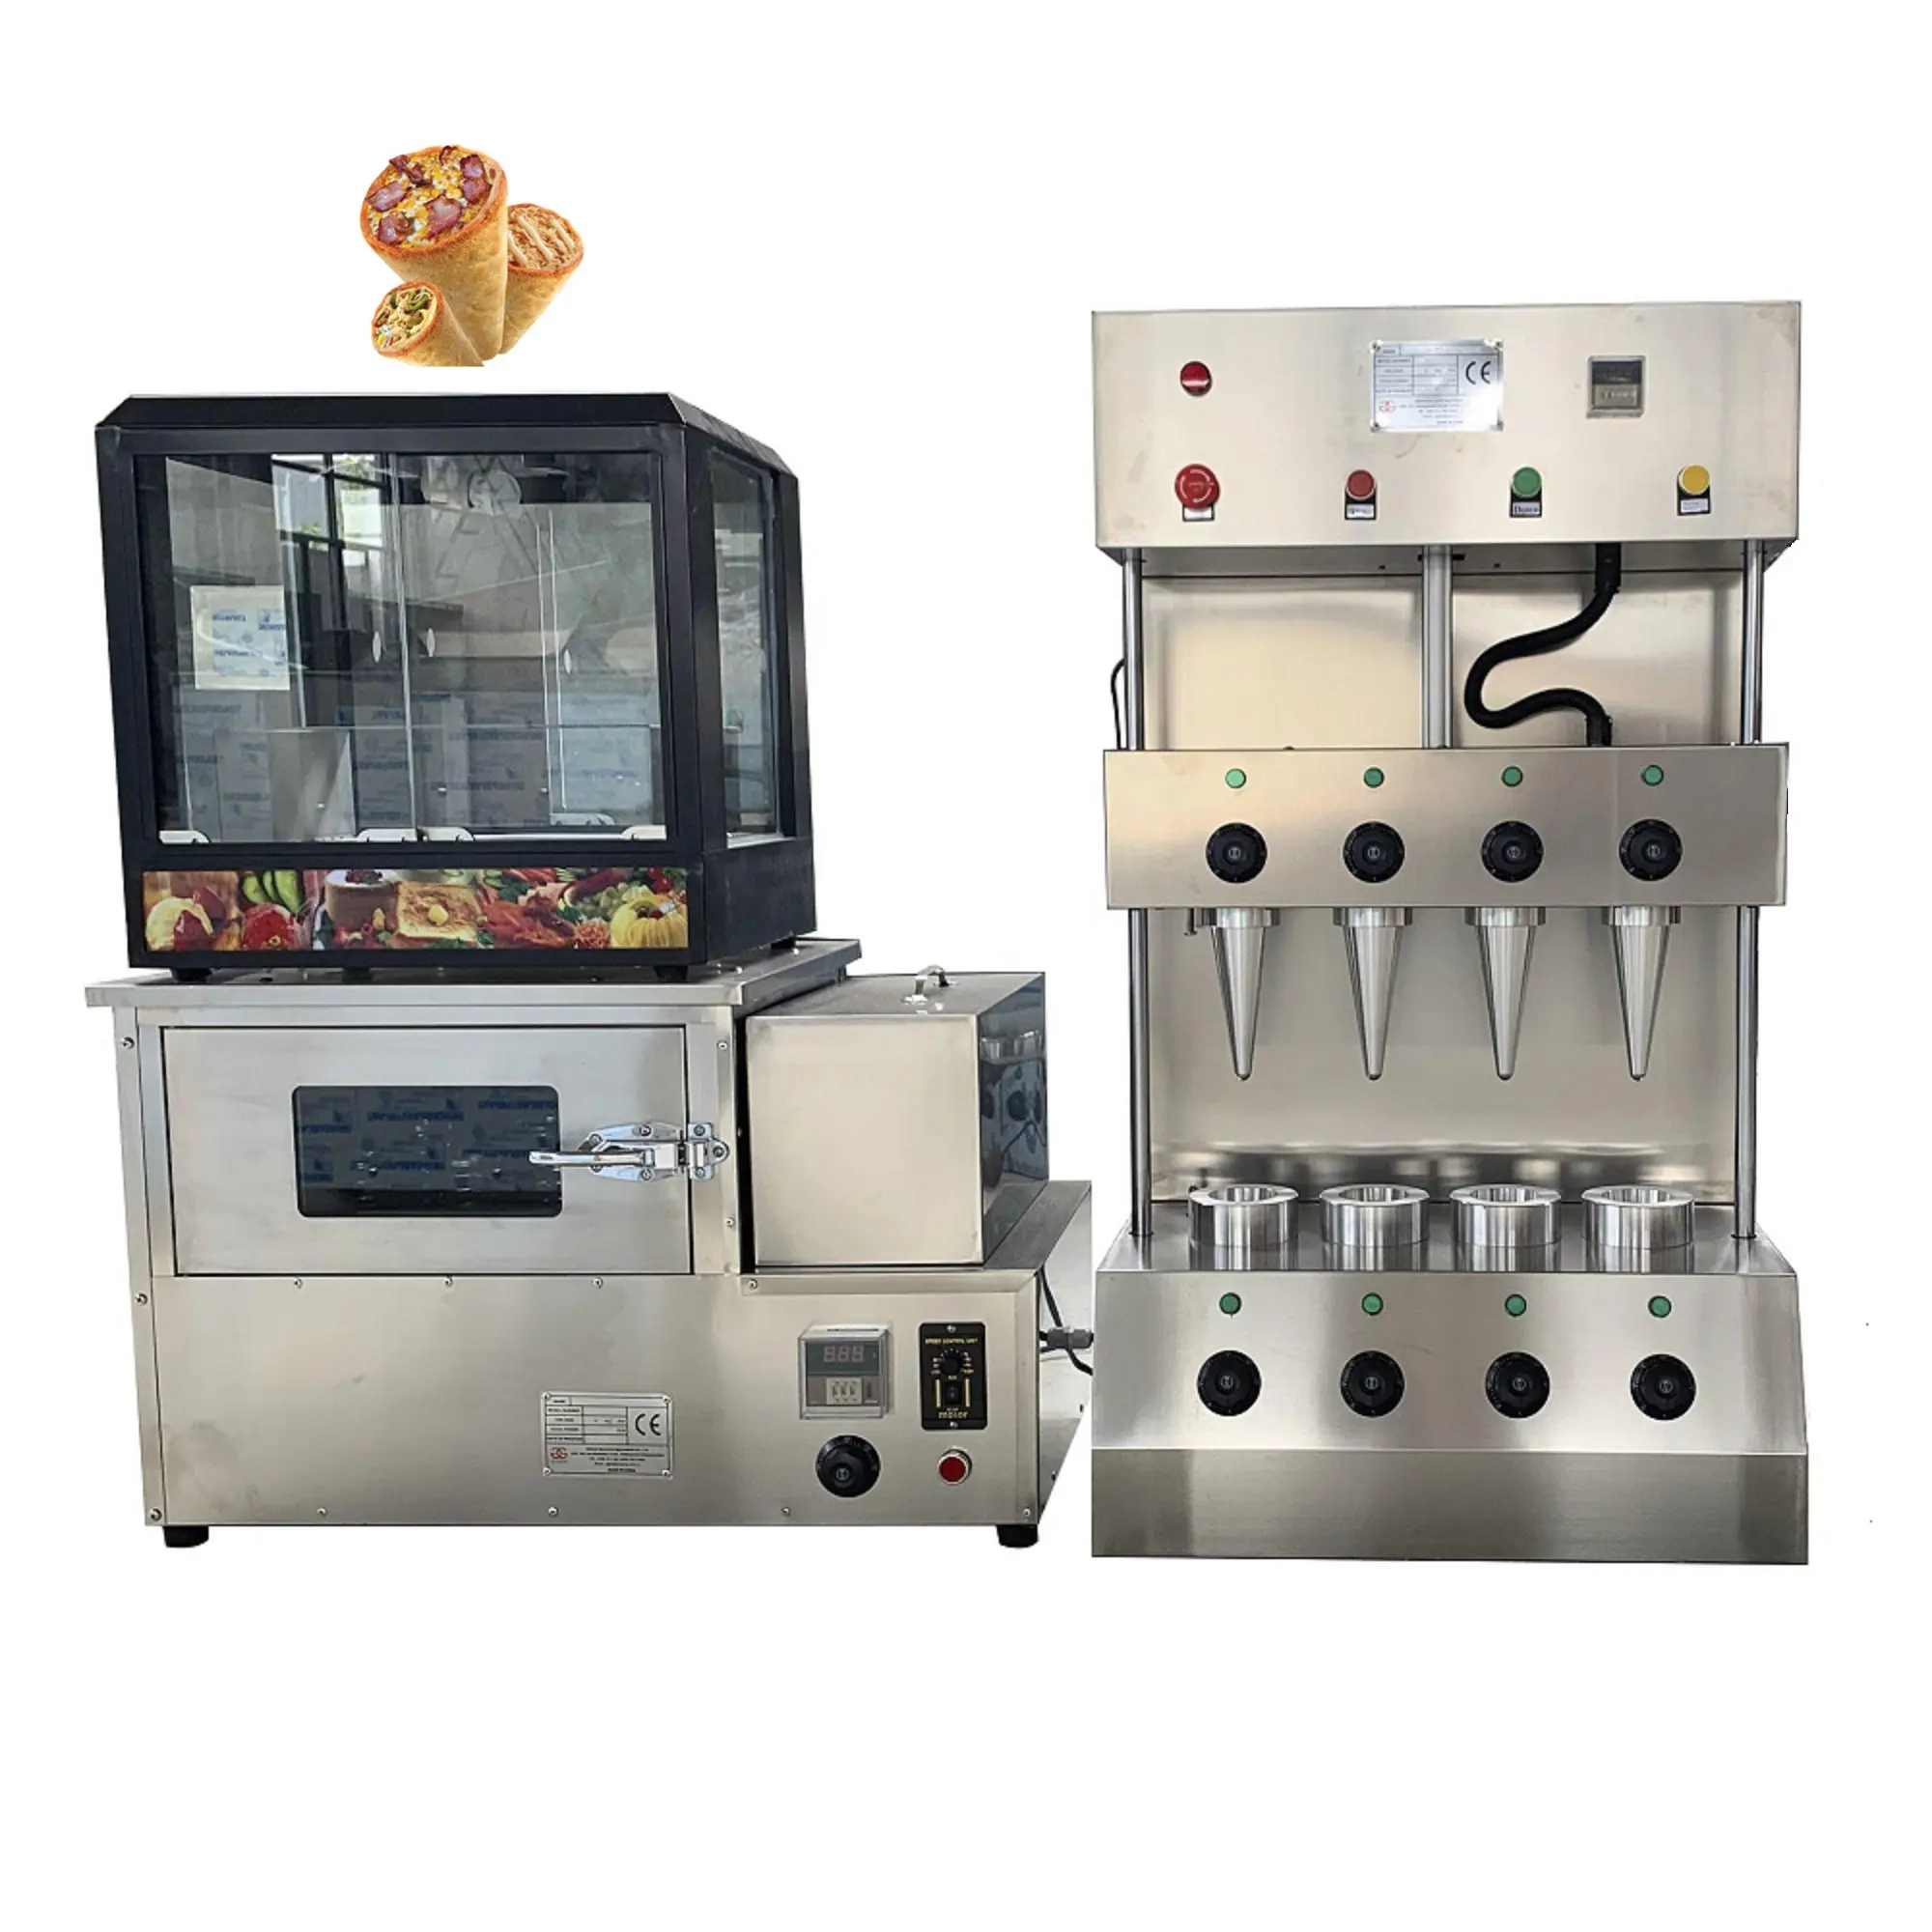 تخفيض كبير على آلة تشكيل البيتزا السكرية الحلوة برأسين مع فرن دوار وصندوق إظهار البيتزا من Oem